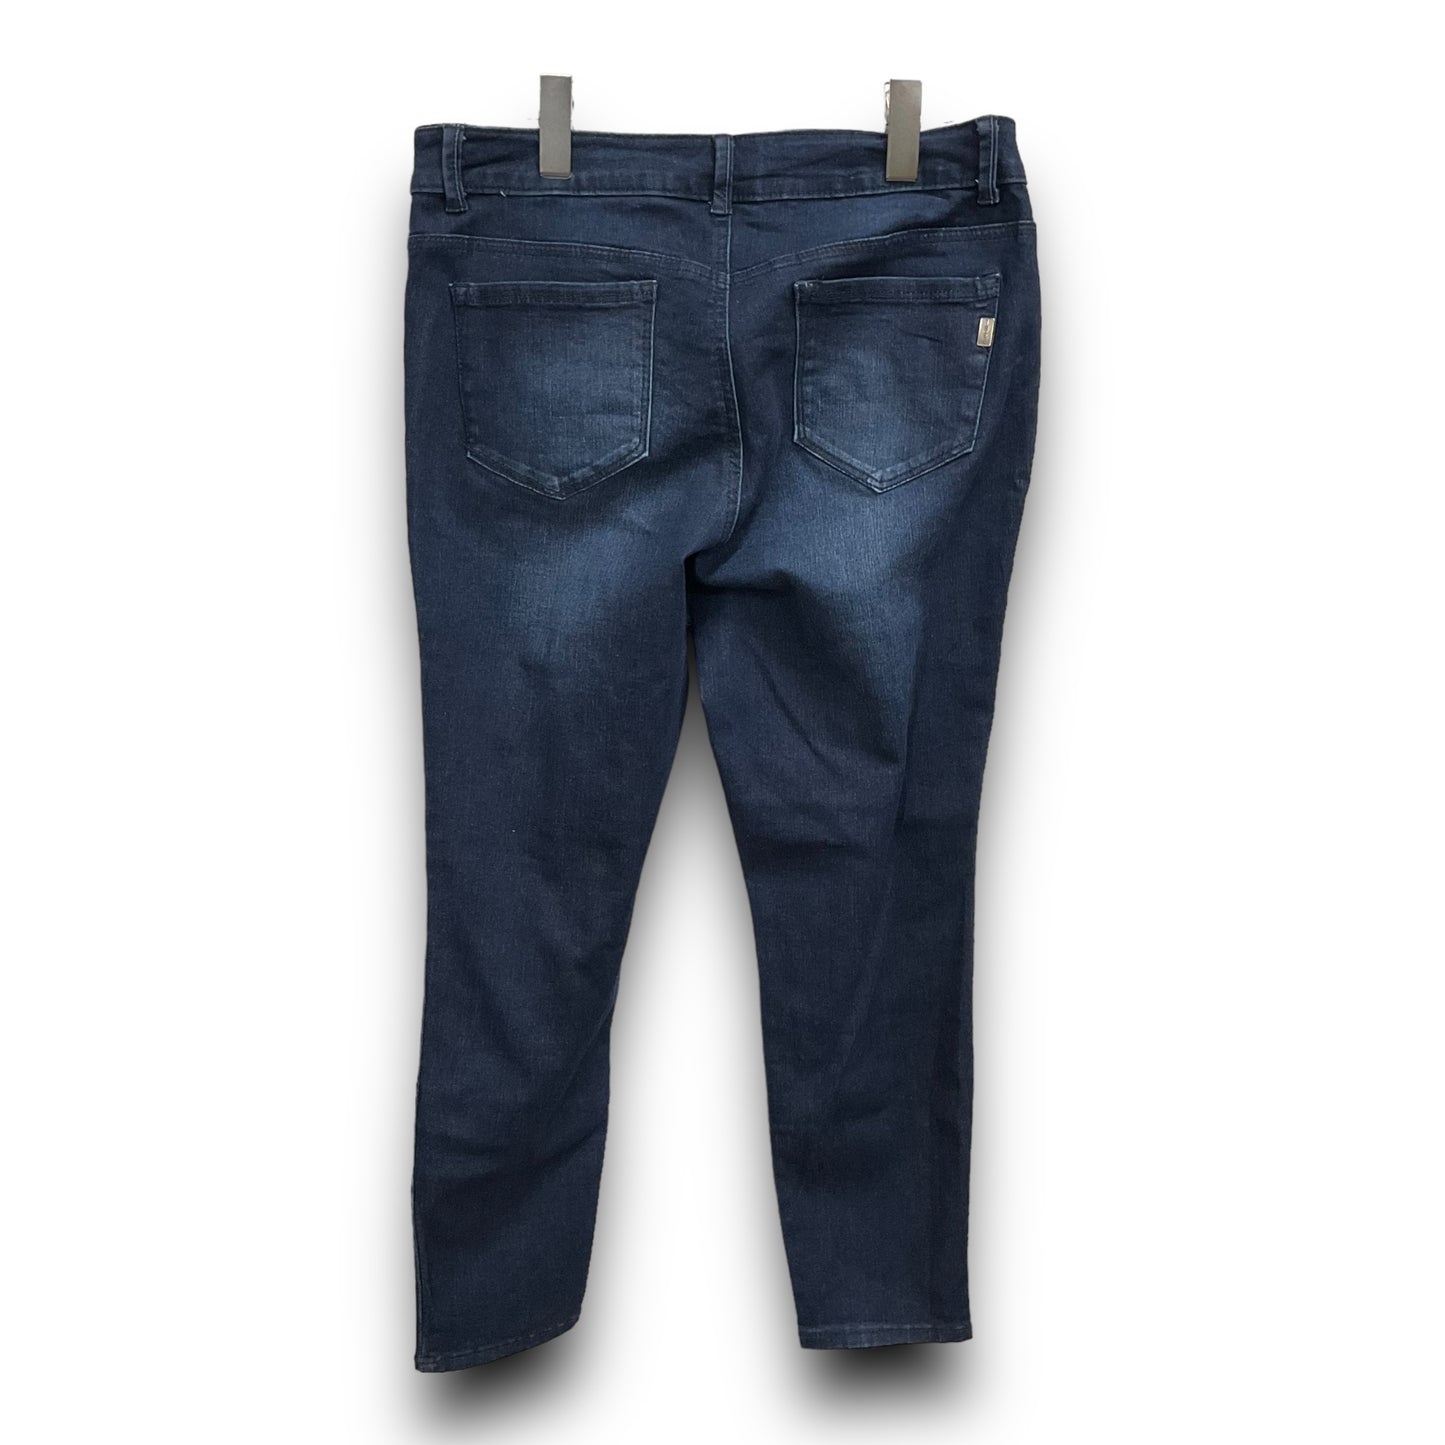 Jeans Skinny By 1822 Denim  Size: 12